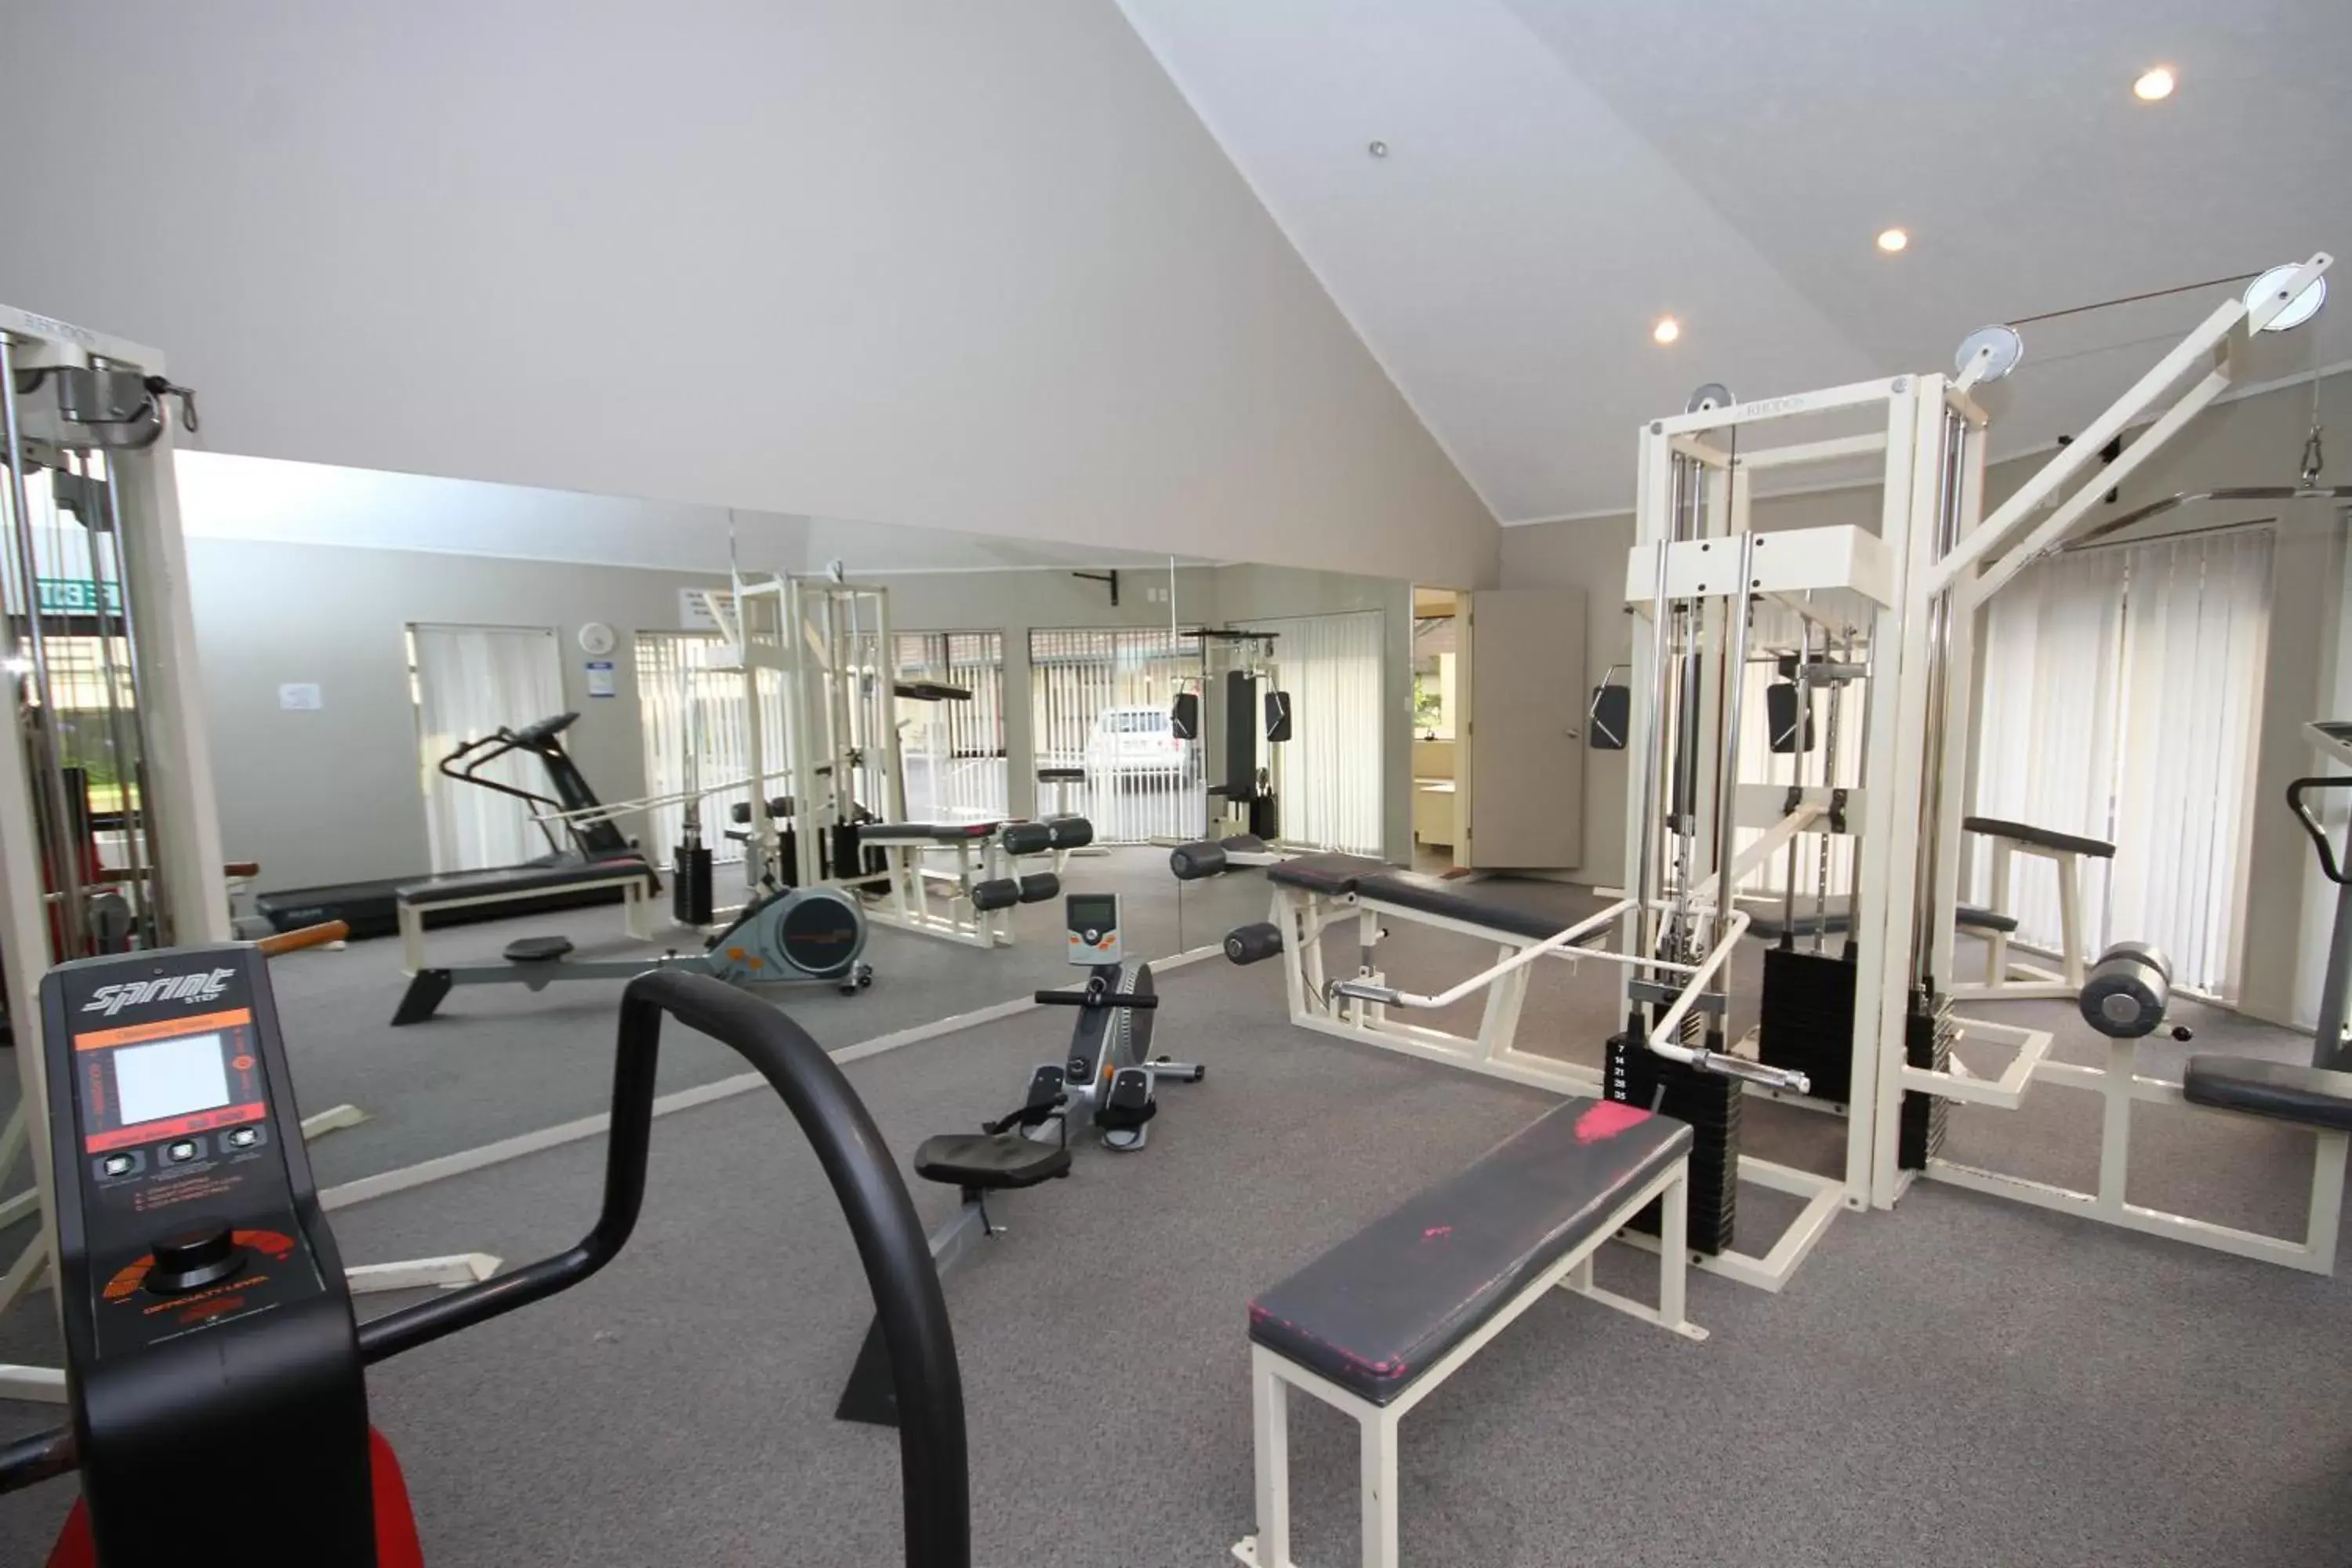 Fitness centre/facilities, Fitness Center/Facilities in Bentleys Motor Inn